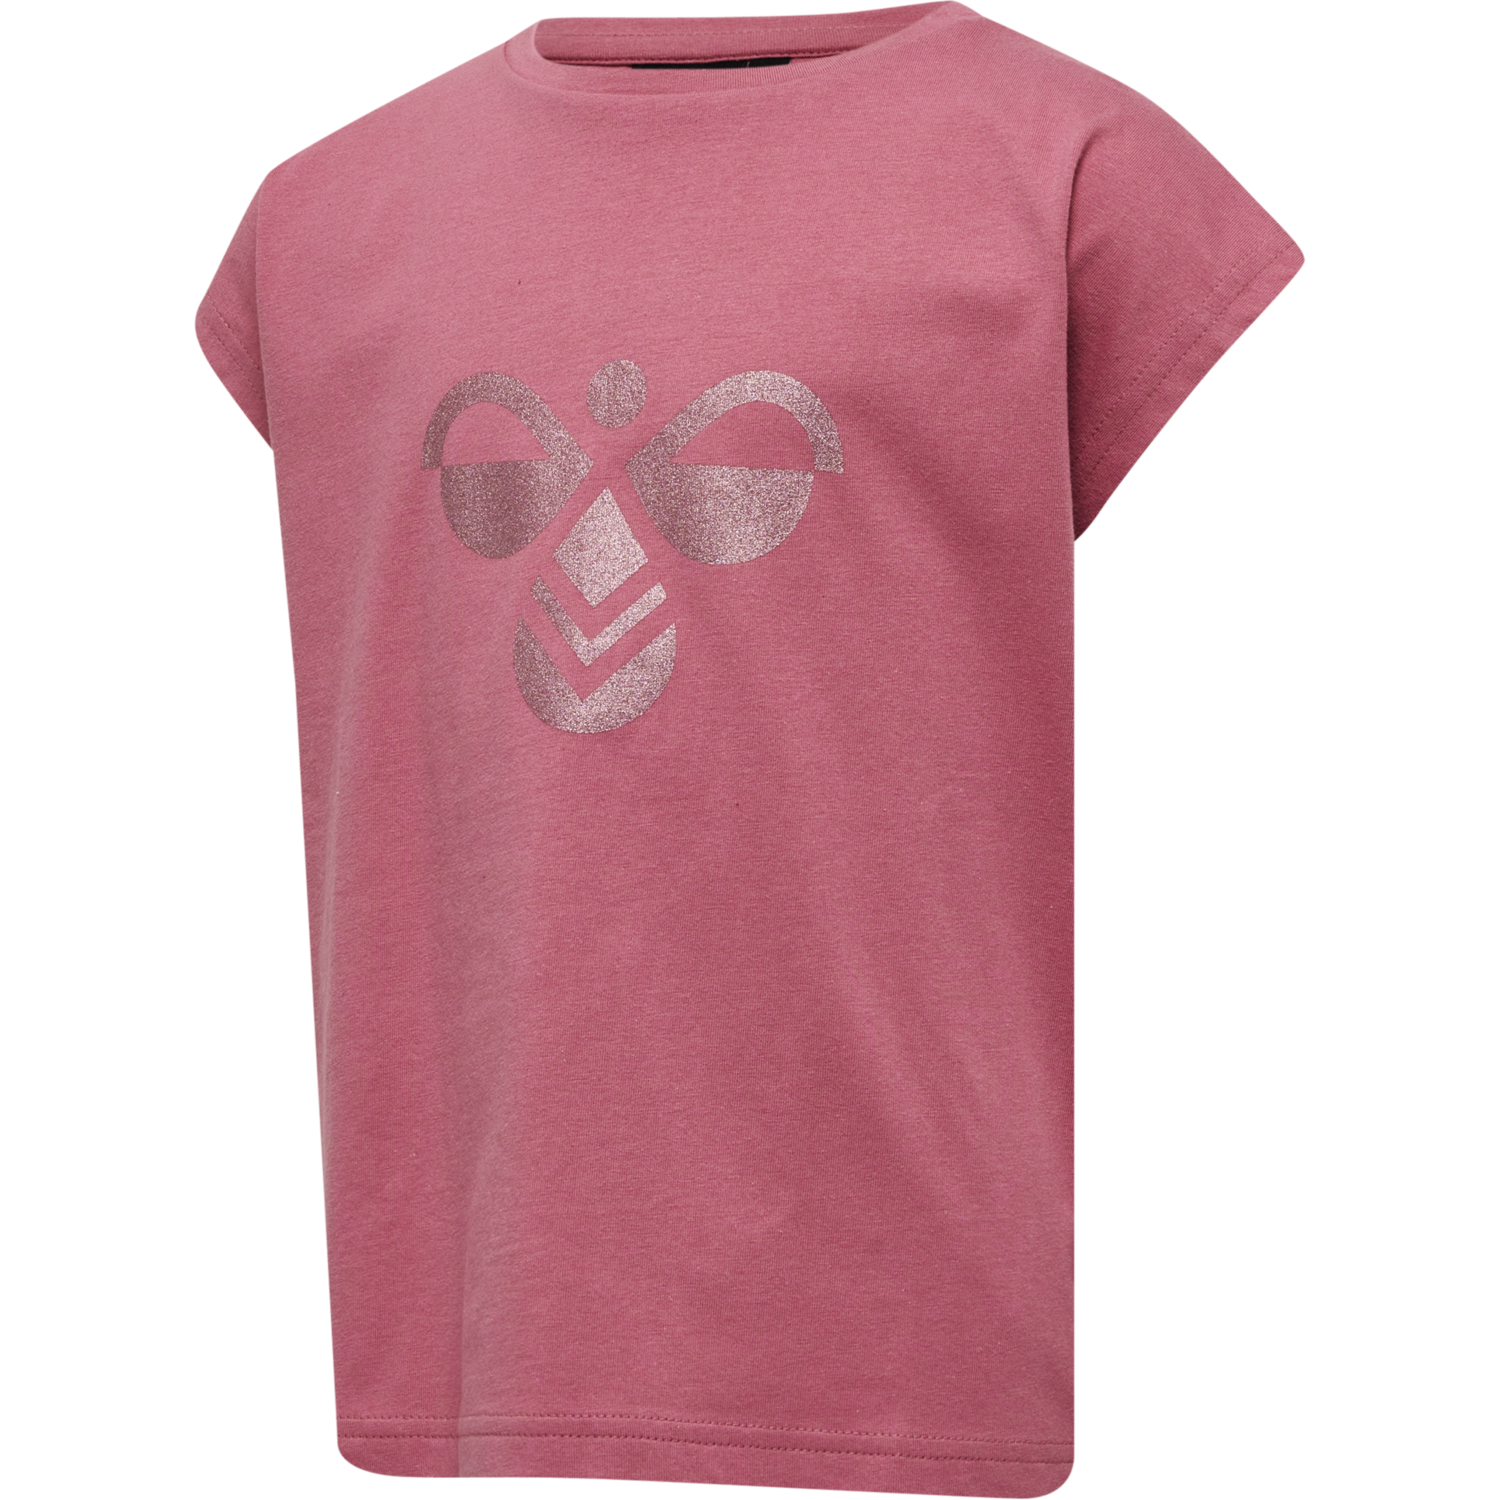 Hummel Diez T-shirt - Heather Rose